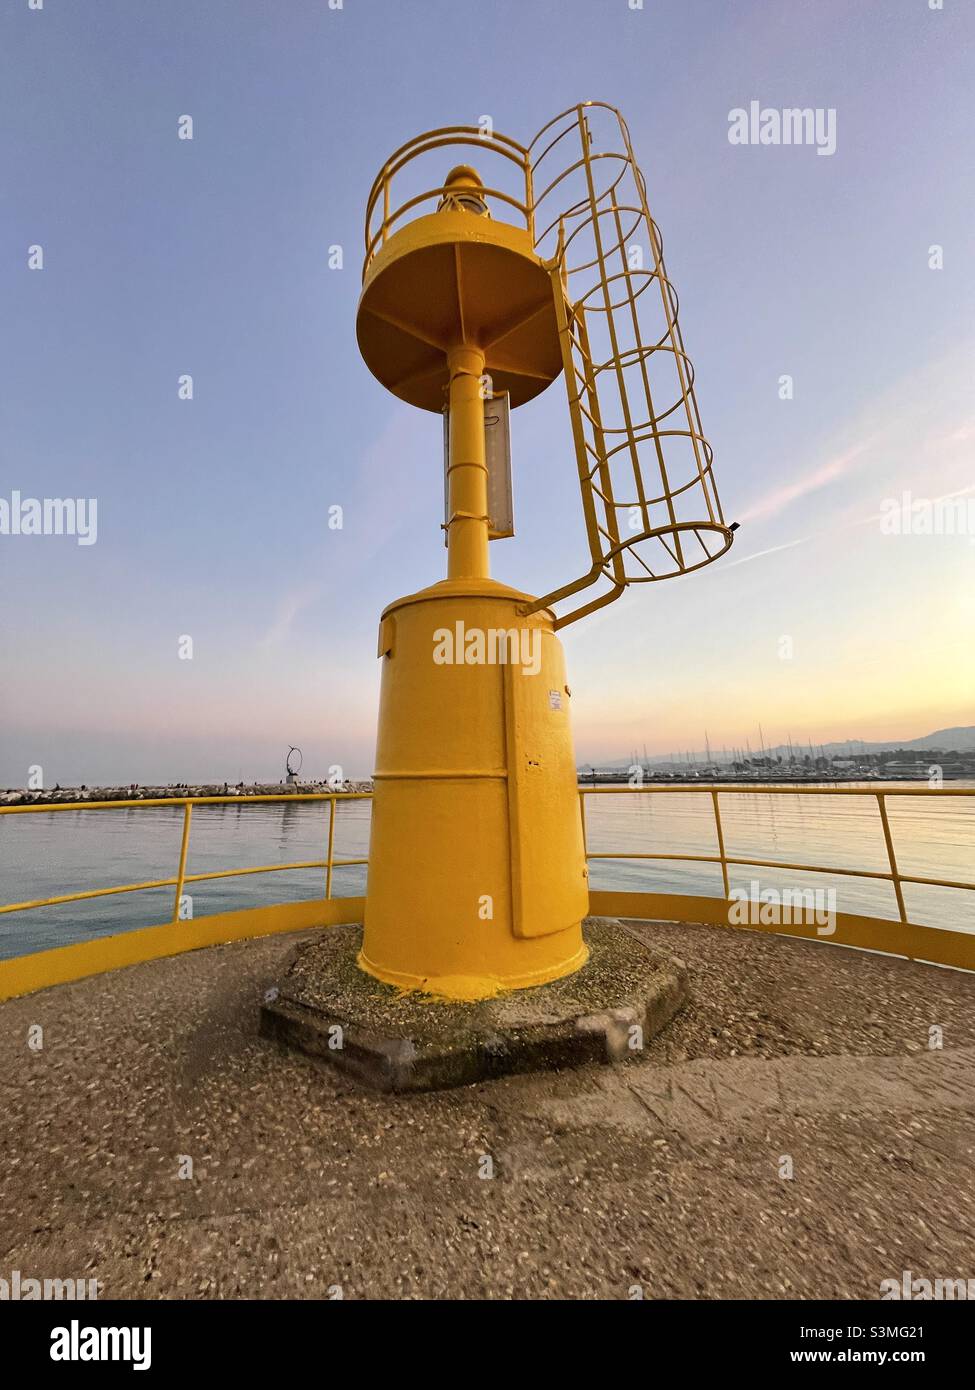 Yellow colored signal lamp, harbor of San Benedetto del Tronto, Marche region, Italy Stock Photo